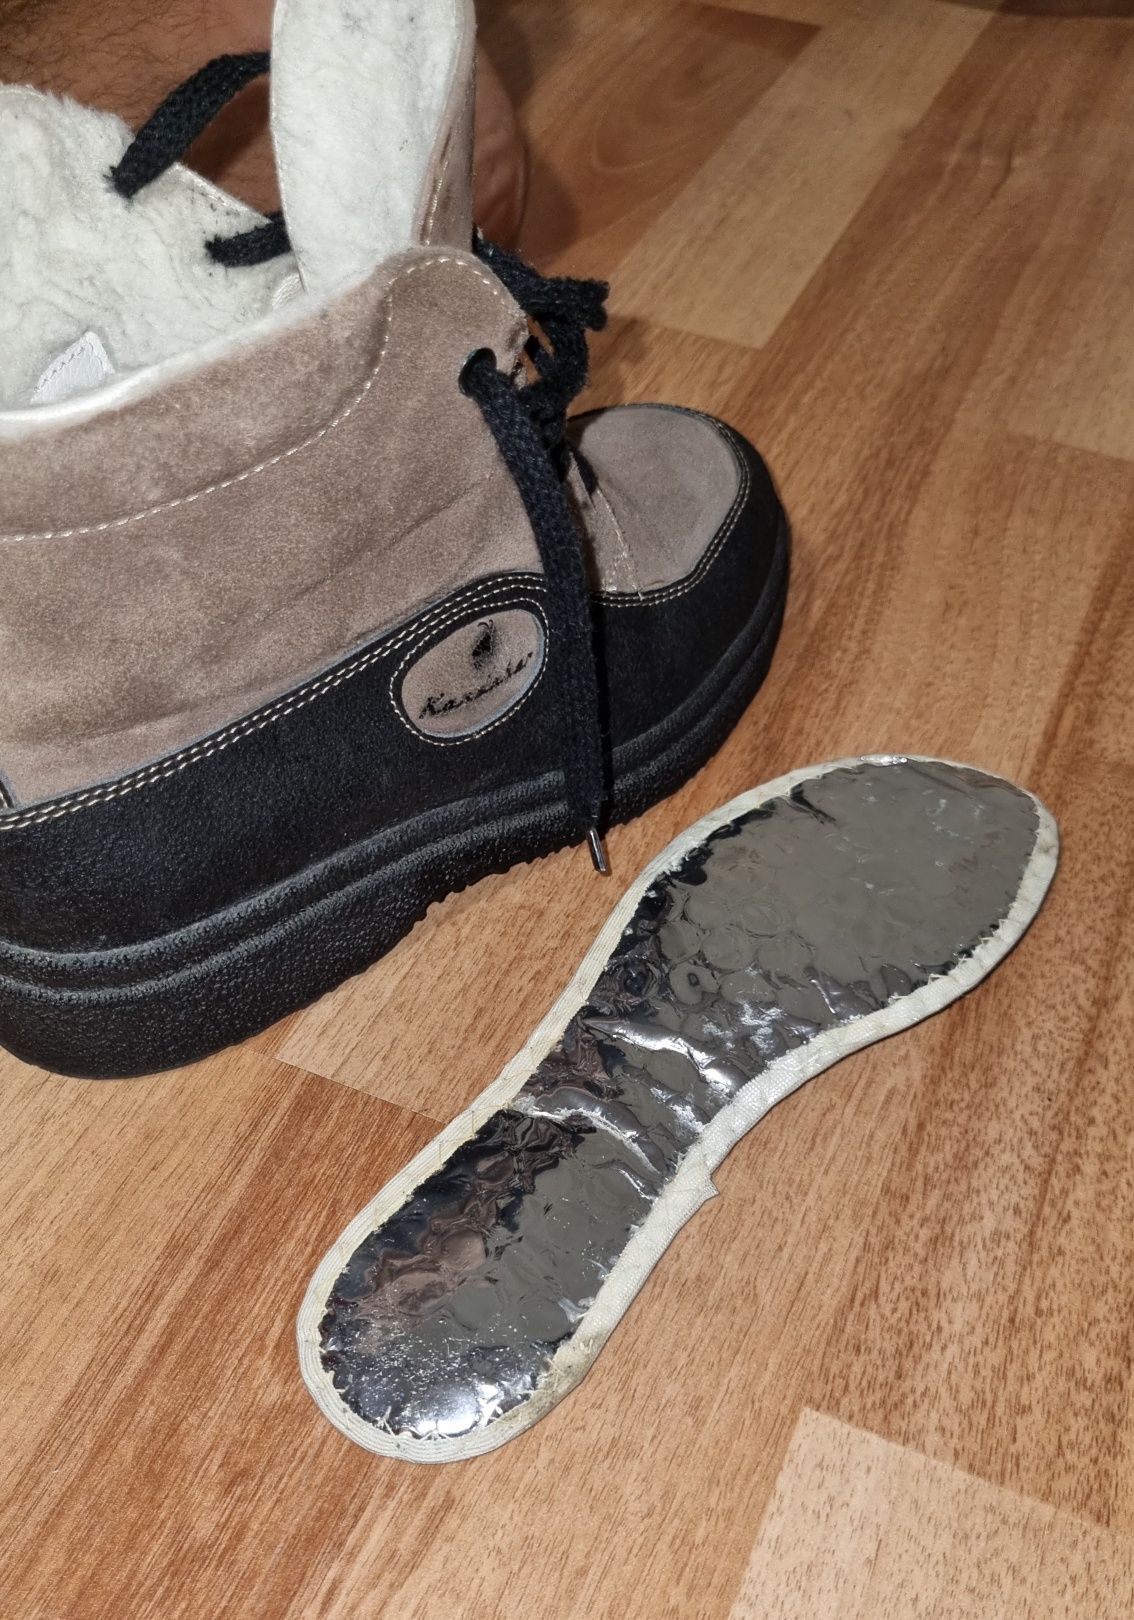 Pantofi / Ghete Kandahar Oslo Brown, Elveția, Piele, Lână - 36